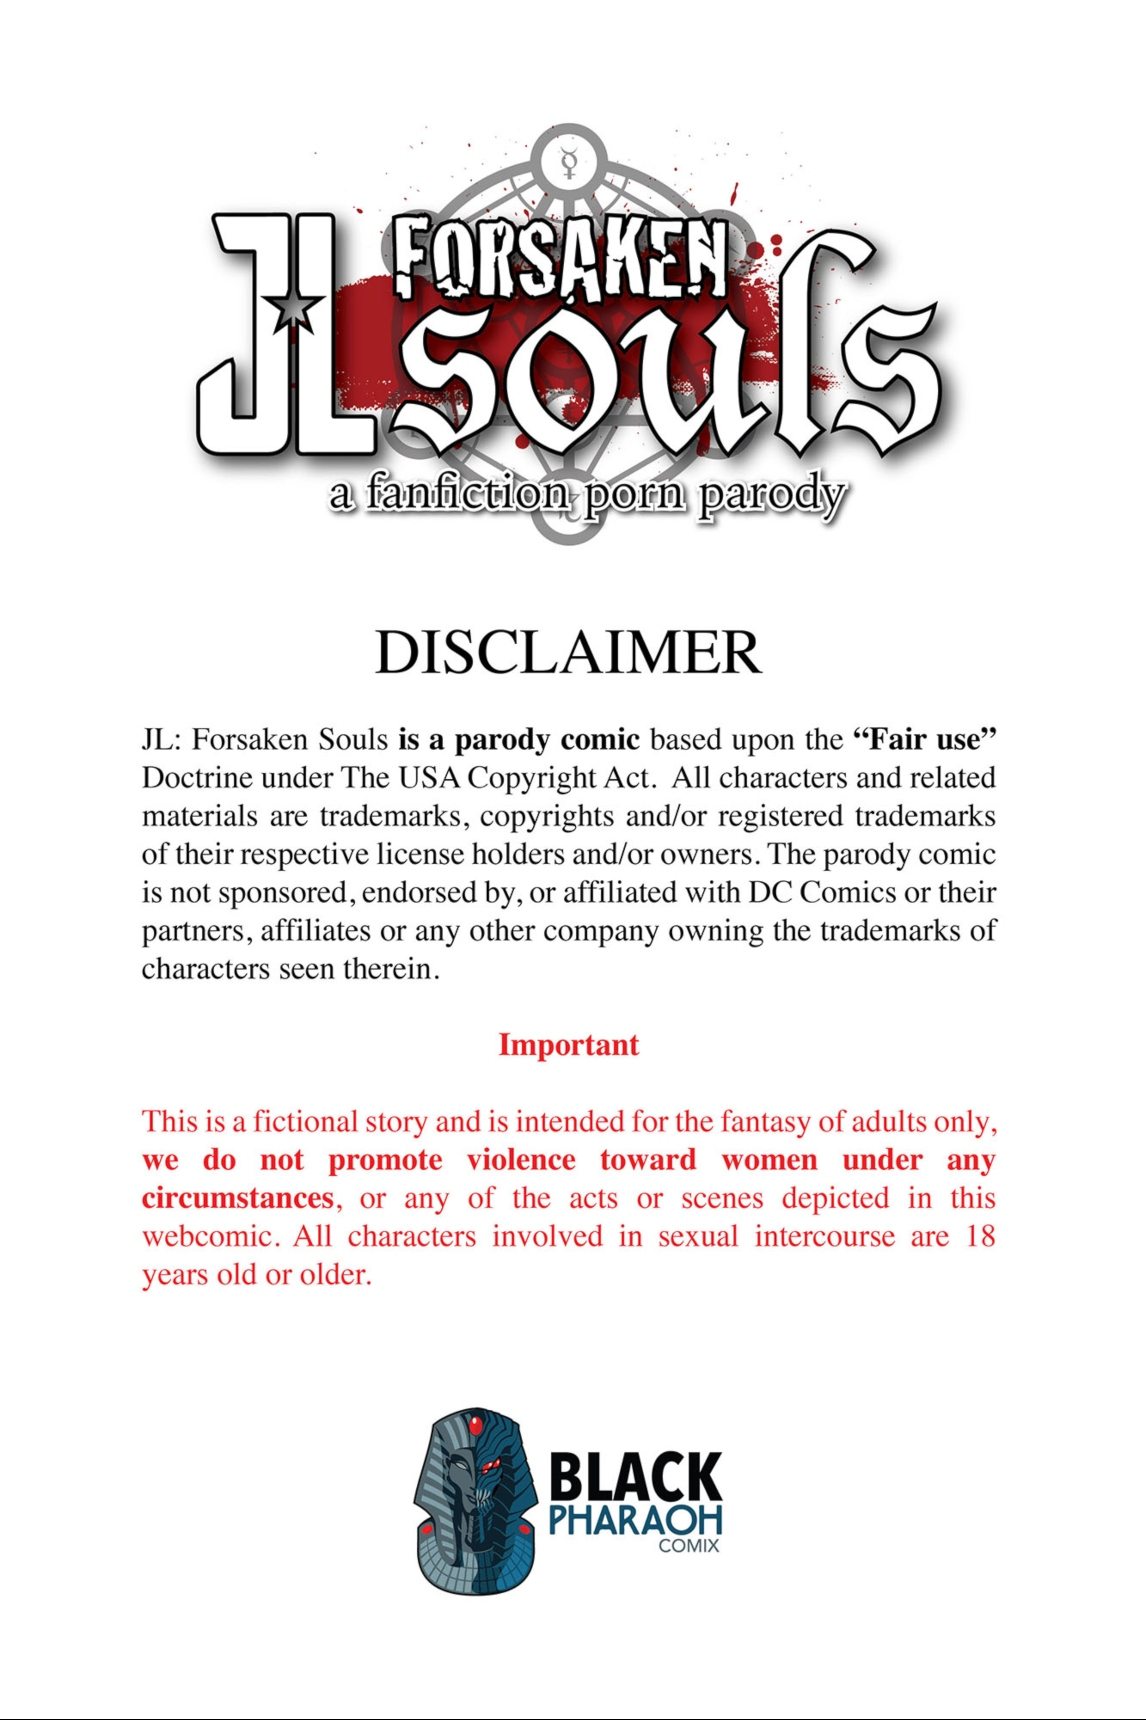 JL Forsaken Souls TheBlackPharaoh